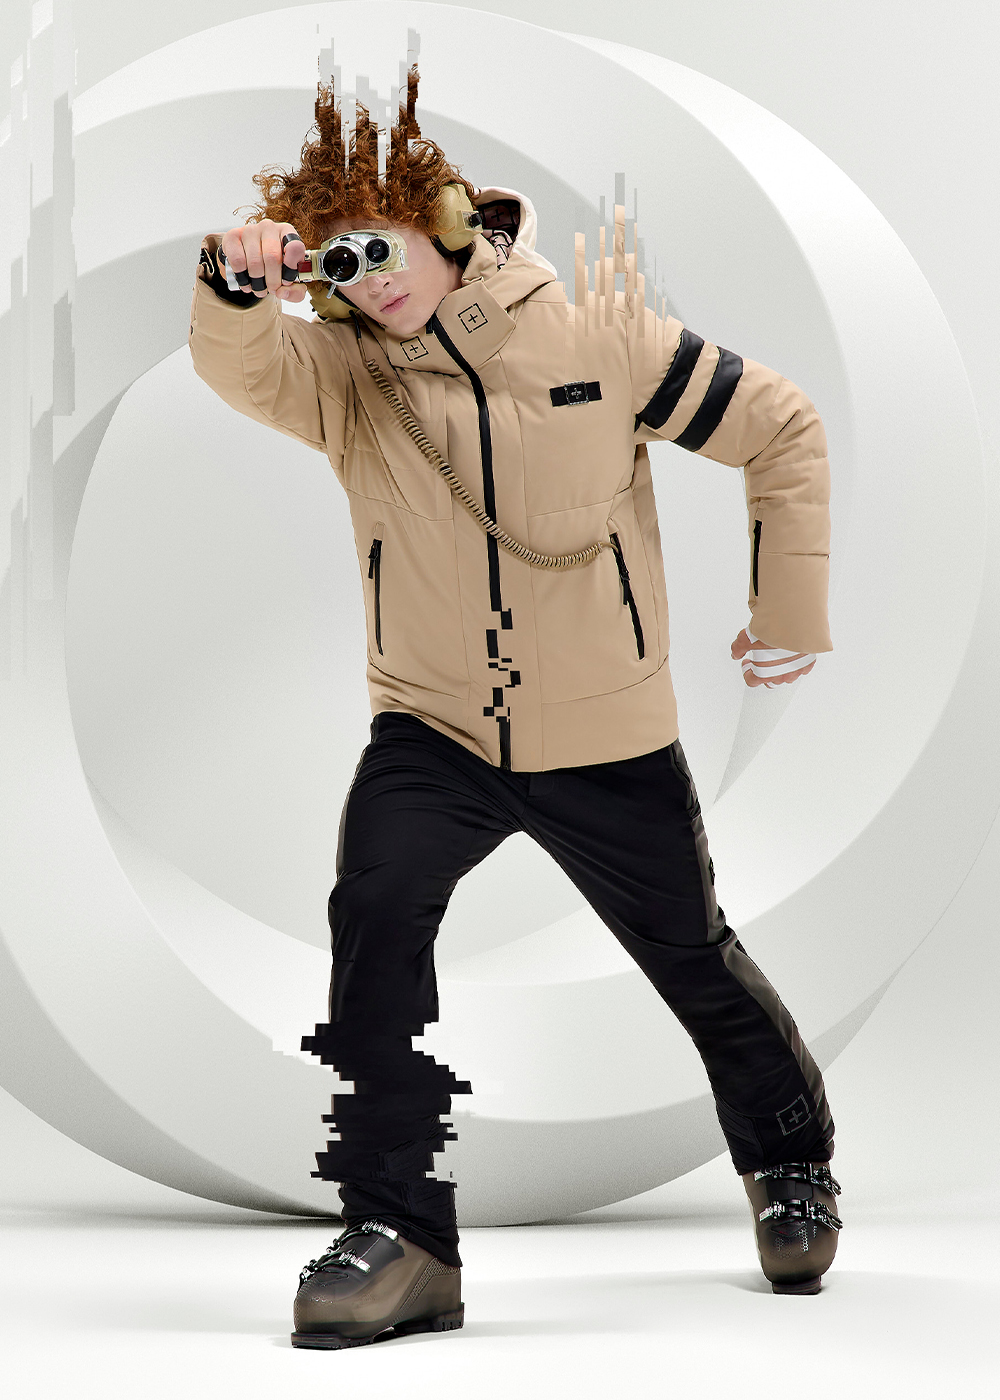 OneMore AppleSkin Man 201 jacket + 971 pants